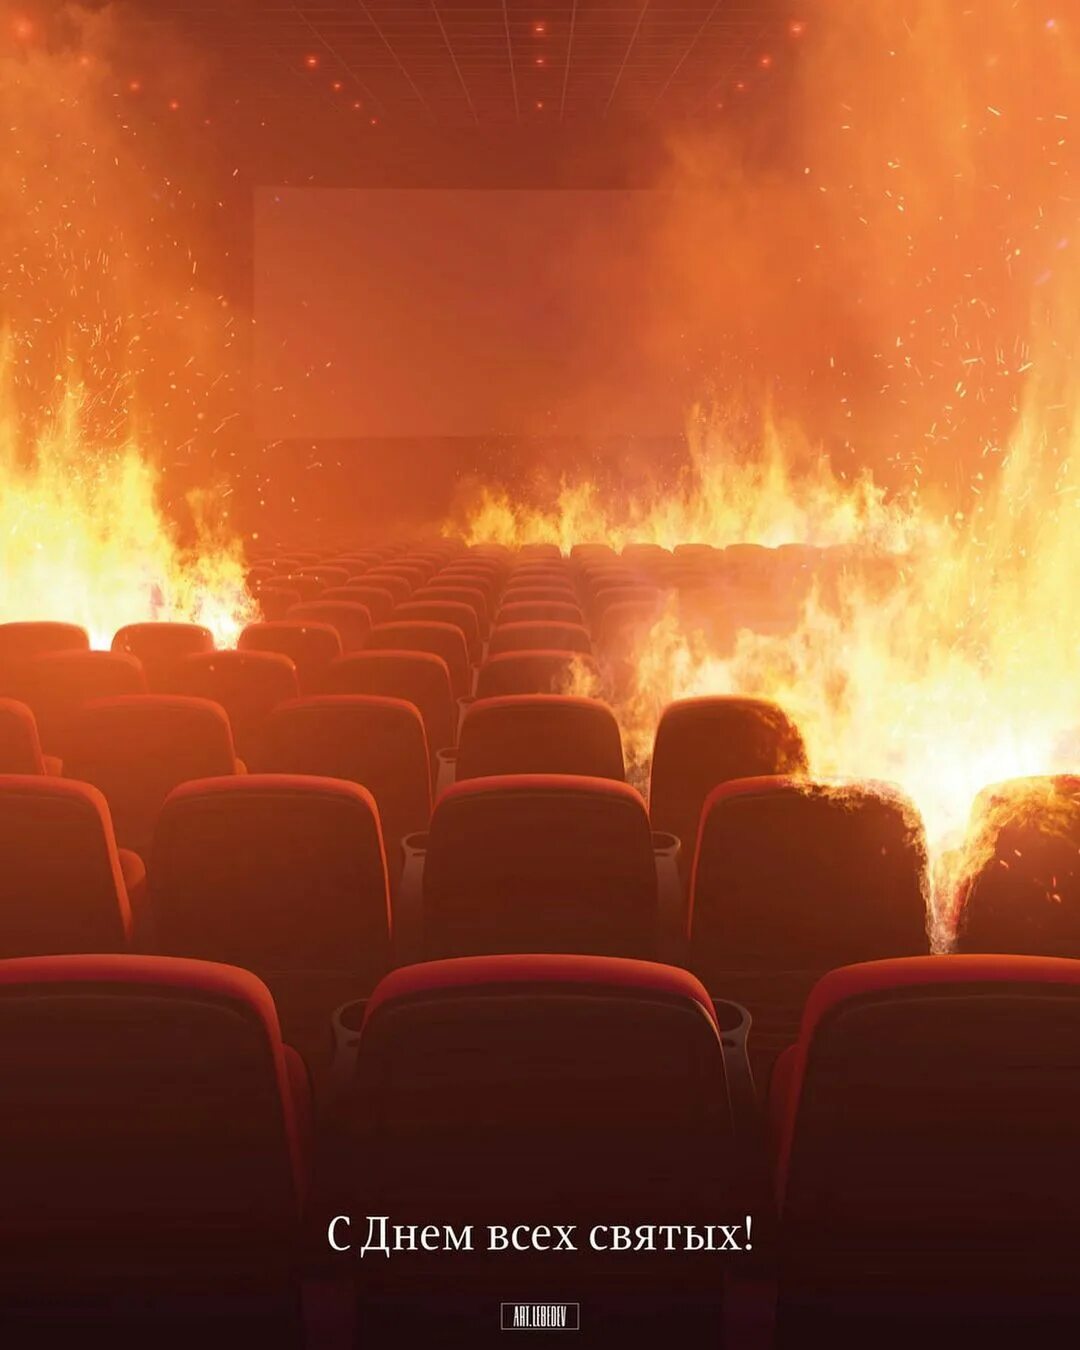 Сгорел кинотеатр. Горящий кинотеатр. Горящий зал. Загорелся кинотеатр. Сгоревший кинозал.